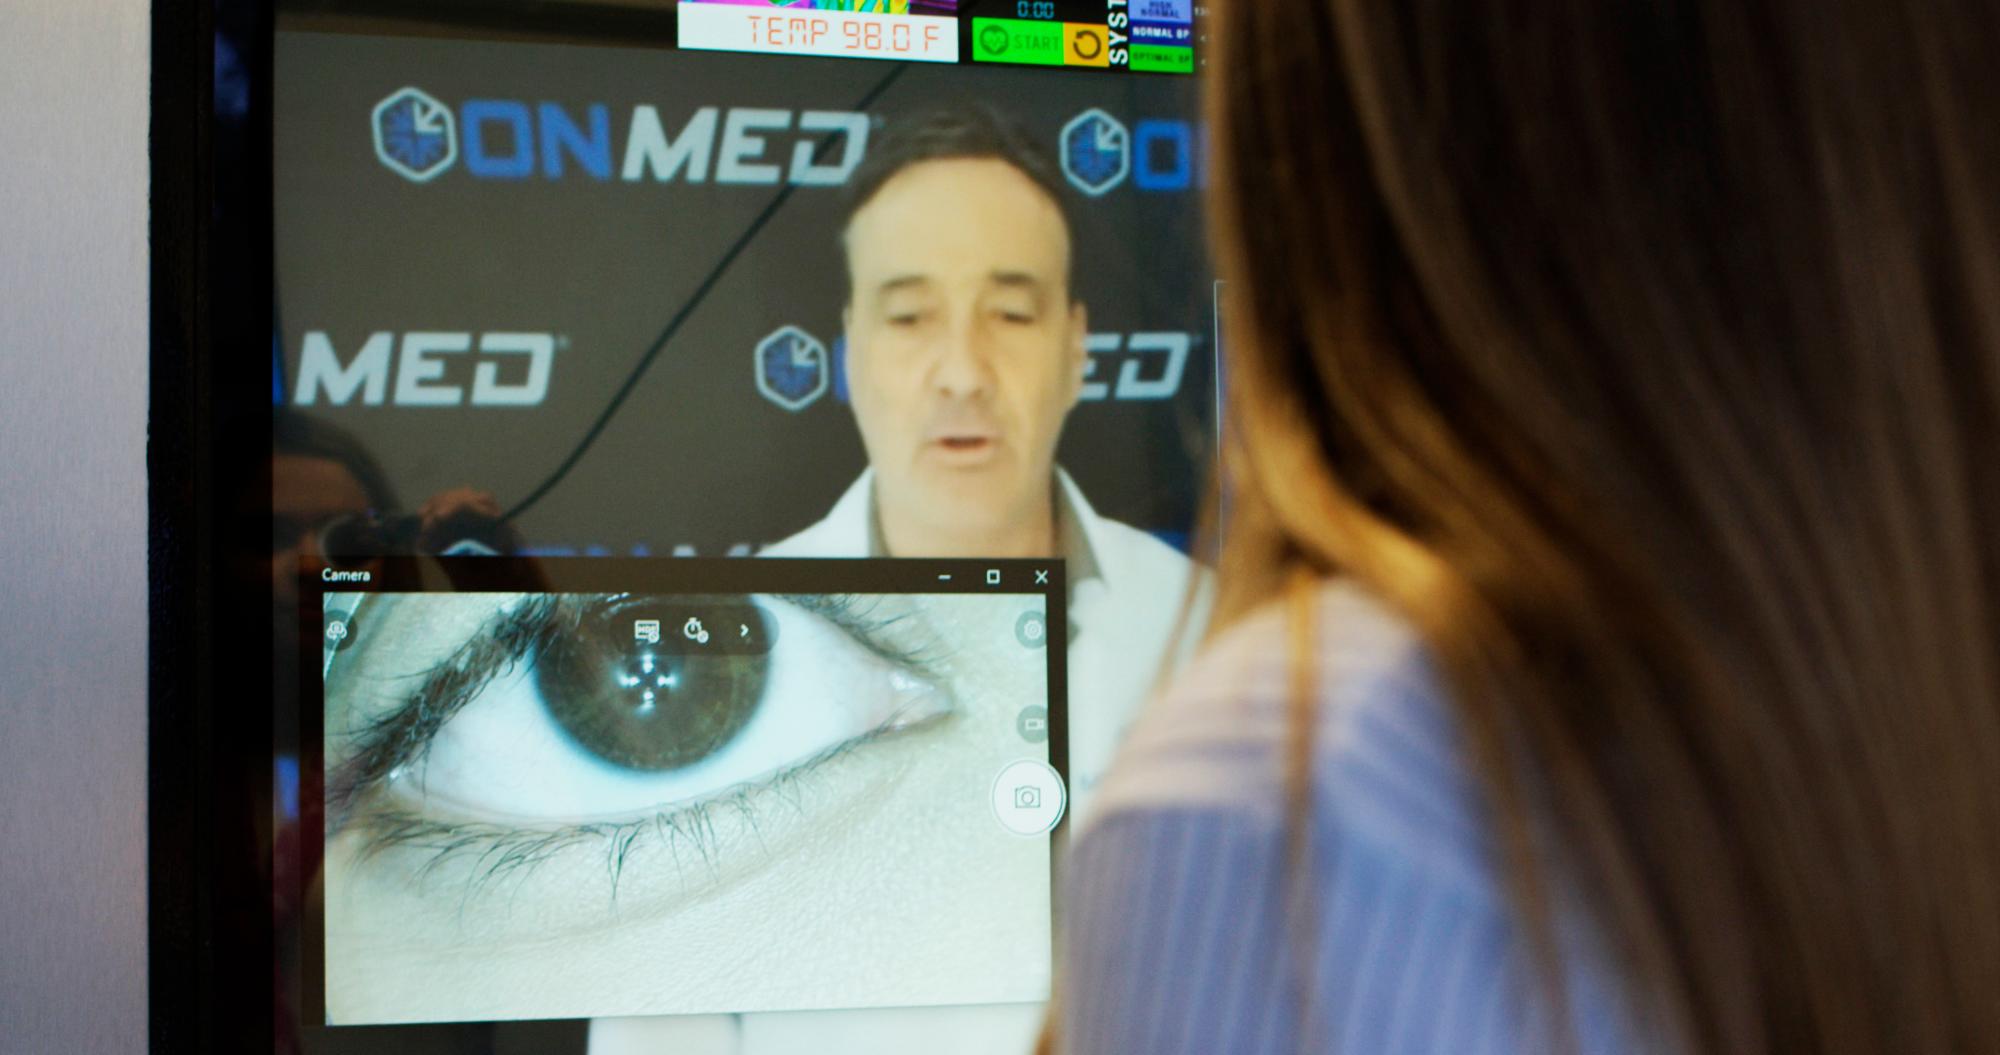 En la imagen una paciente que está realizando una consulta ocular, habla con el médico quien la reconoce online.